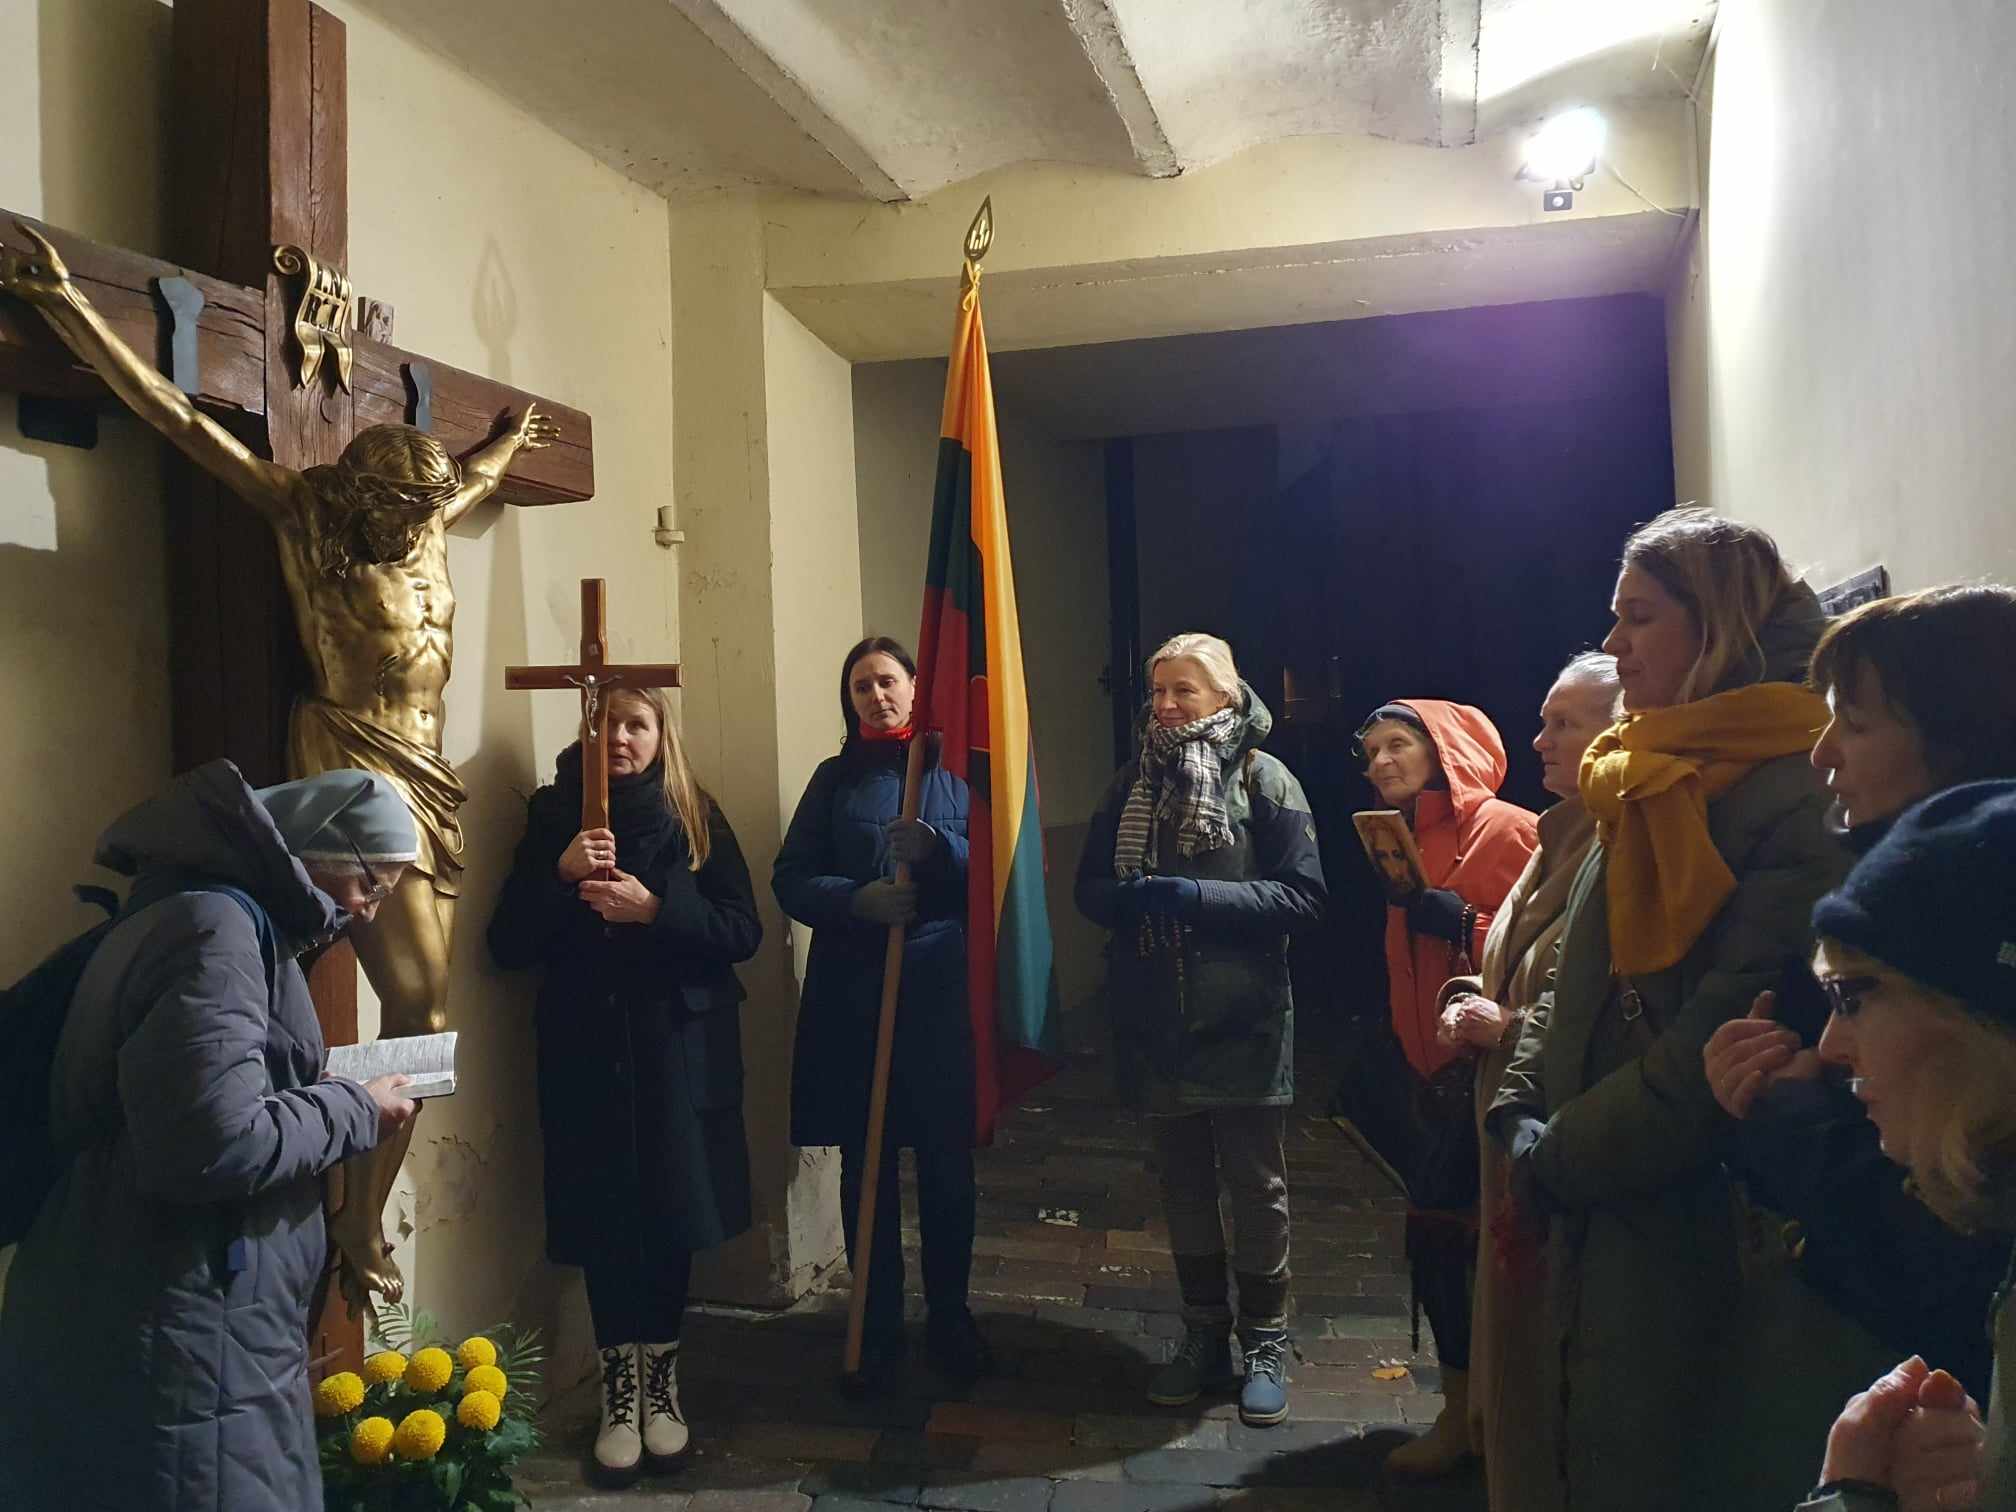 Lapkričio 8 d. Vilniuje pradžioje meldėsi 5 maldininkai, vėliau prisijungė charizminė maldos grupė ,,Viena Kristuje". Viso meldėsi 13 maldininkų.
